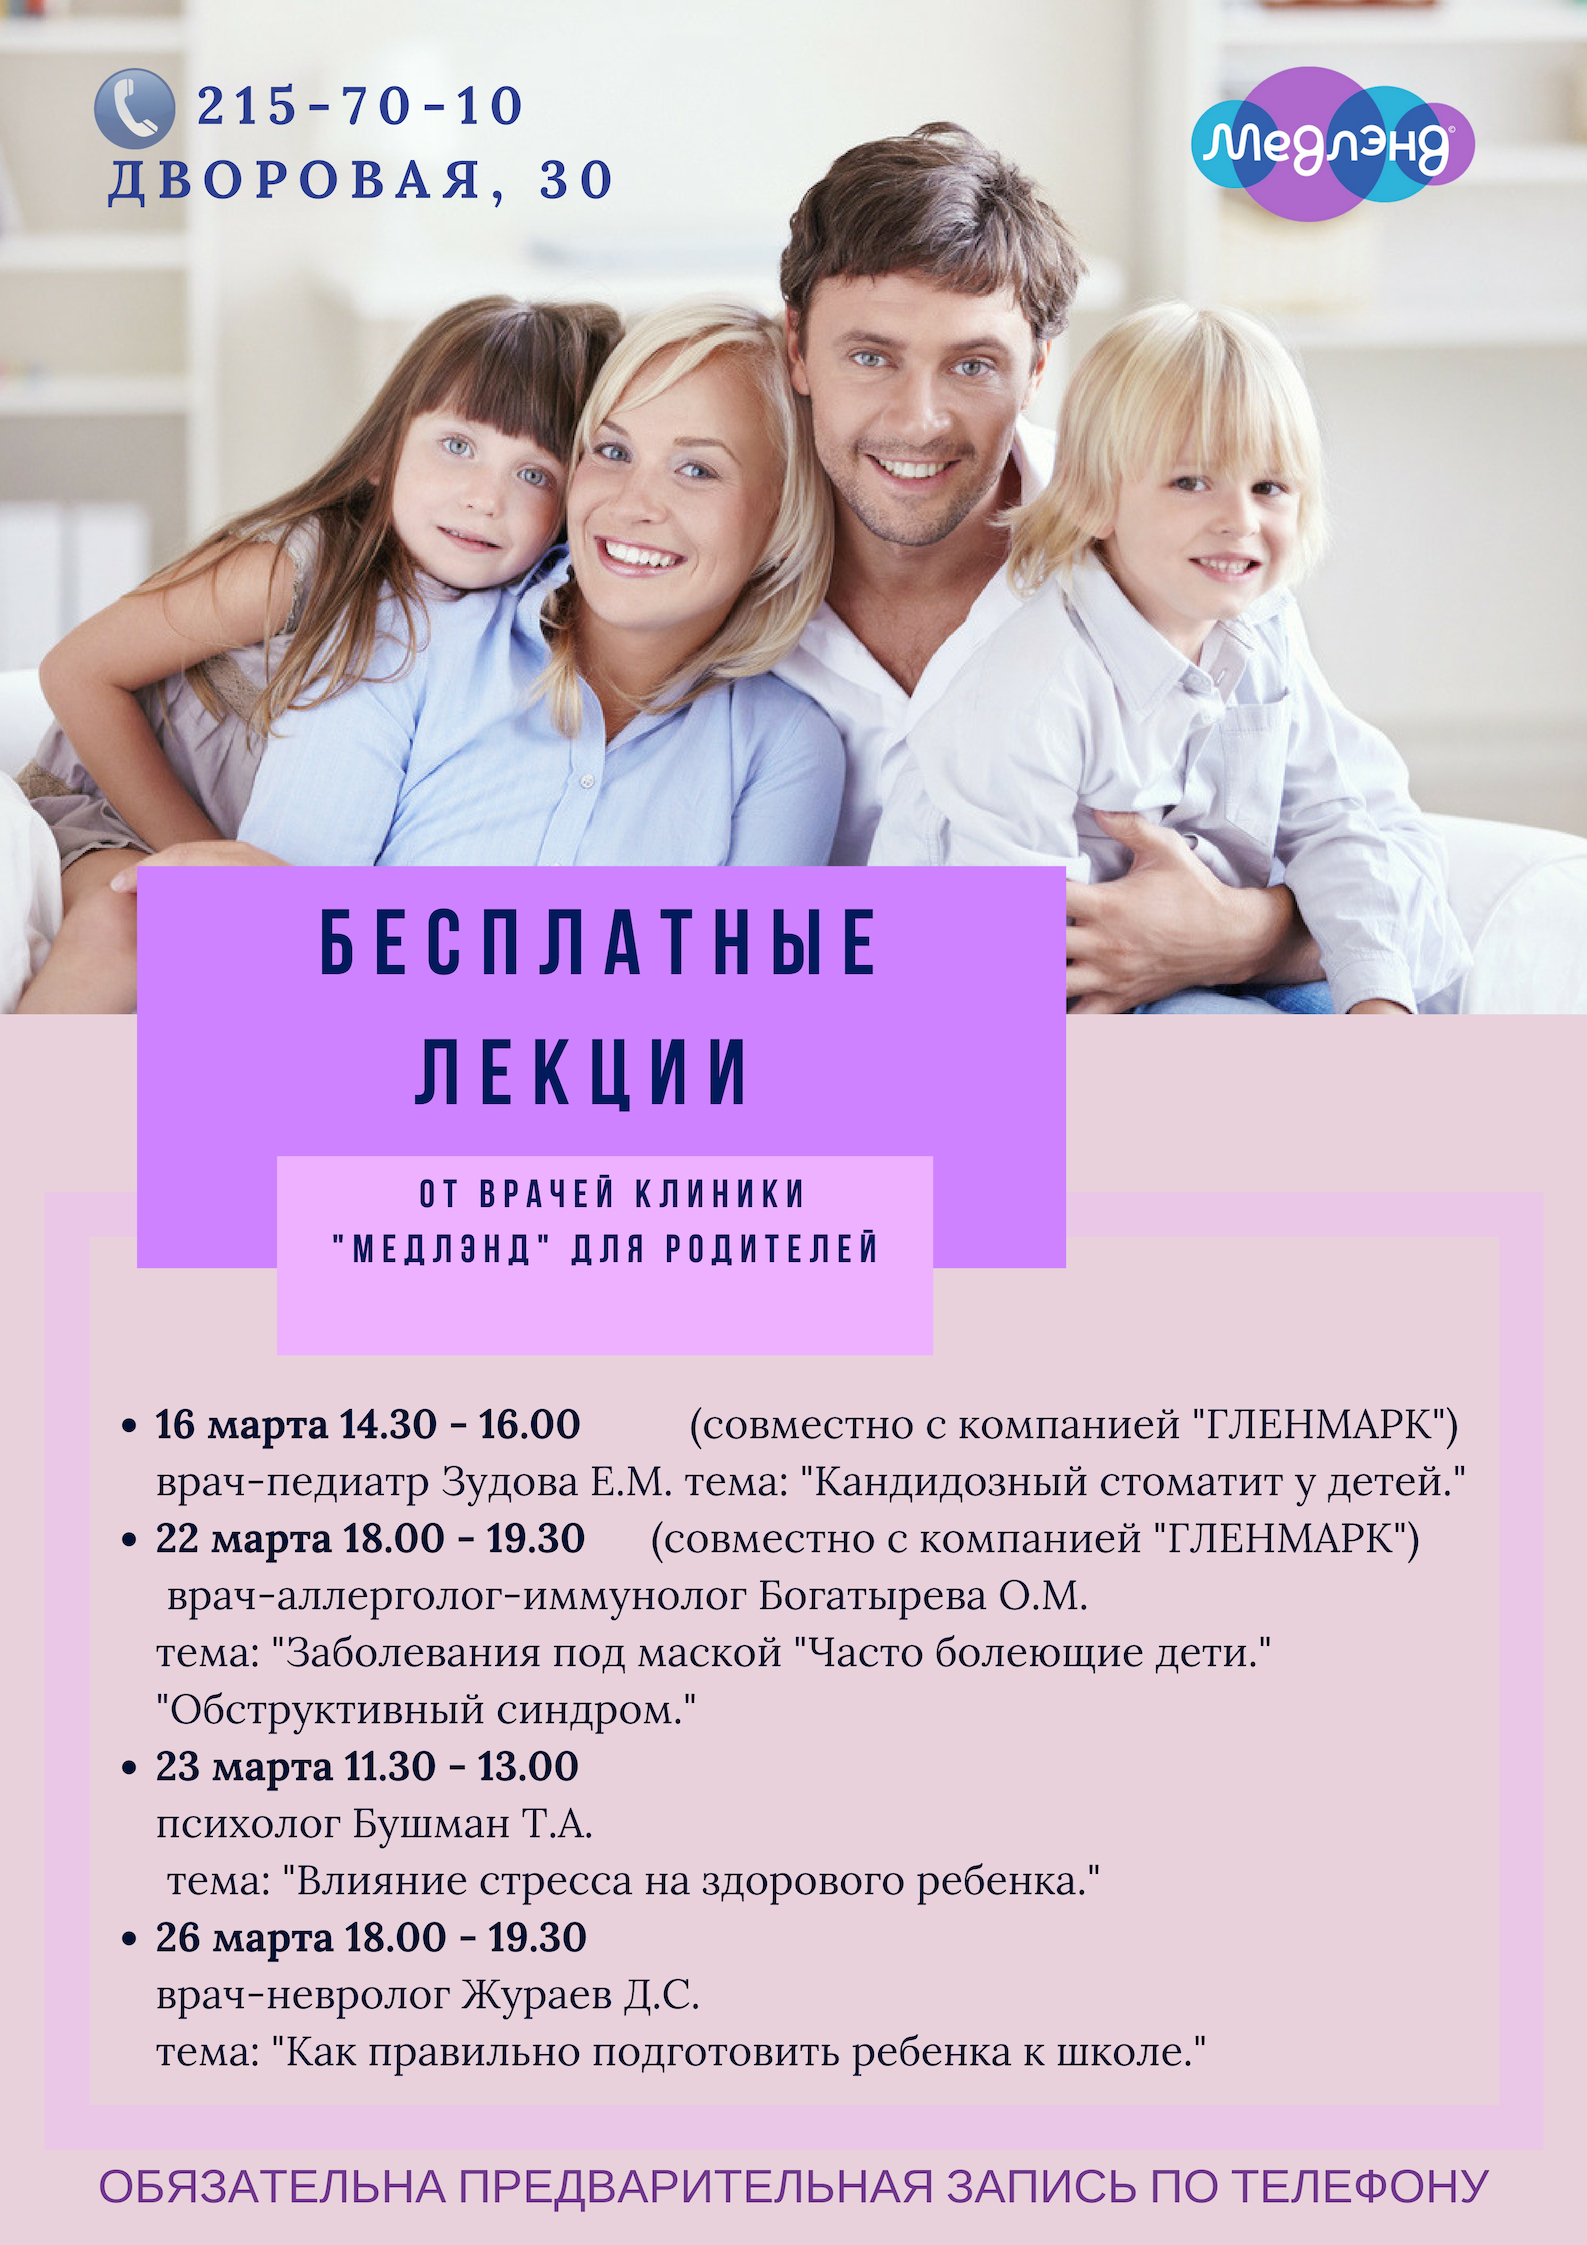 Бесплатные лекции о здоровье детей для родителей